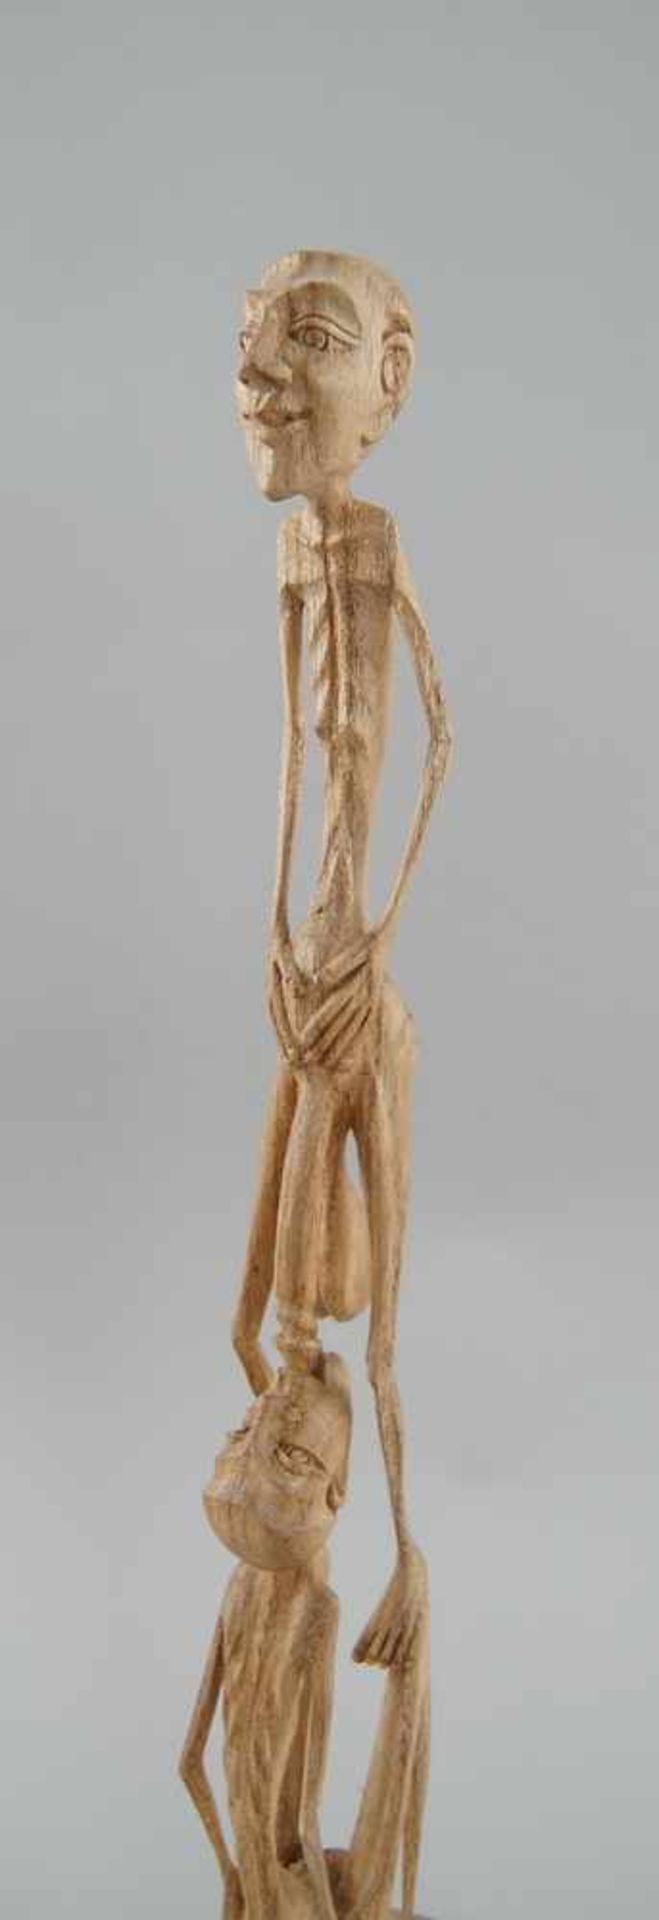 Fruchtbarkeitsskulptur / Ritualskulptur, Holz geschnitzt, H 41cm - Bild 2 aus 4